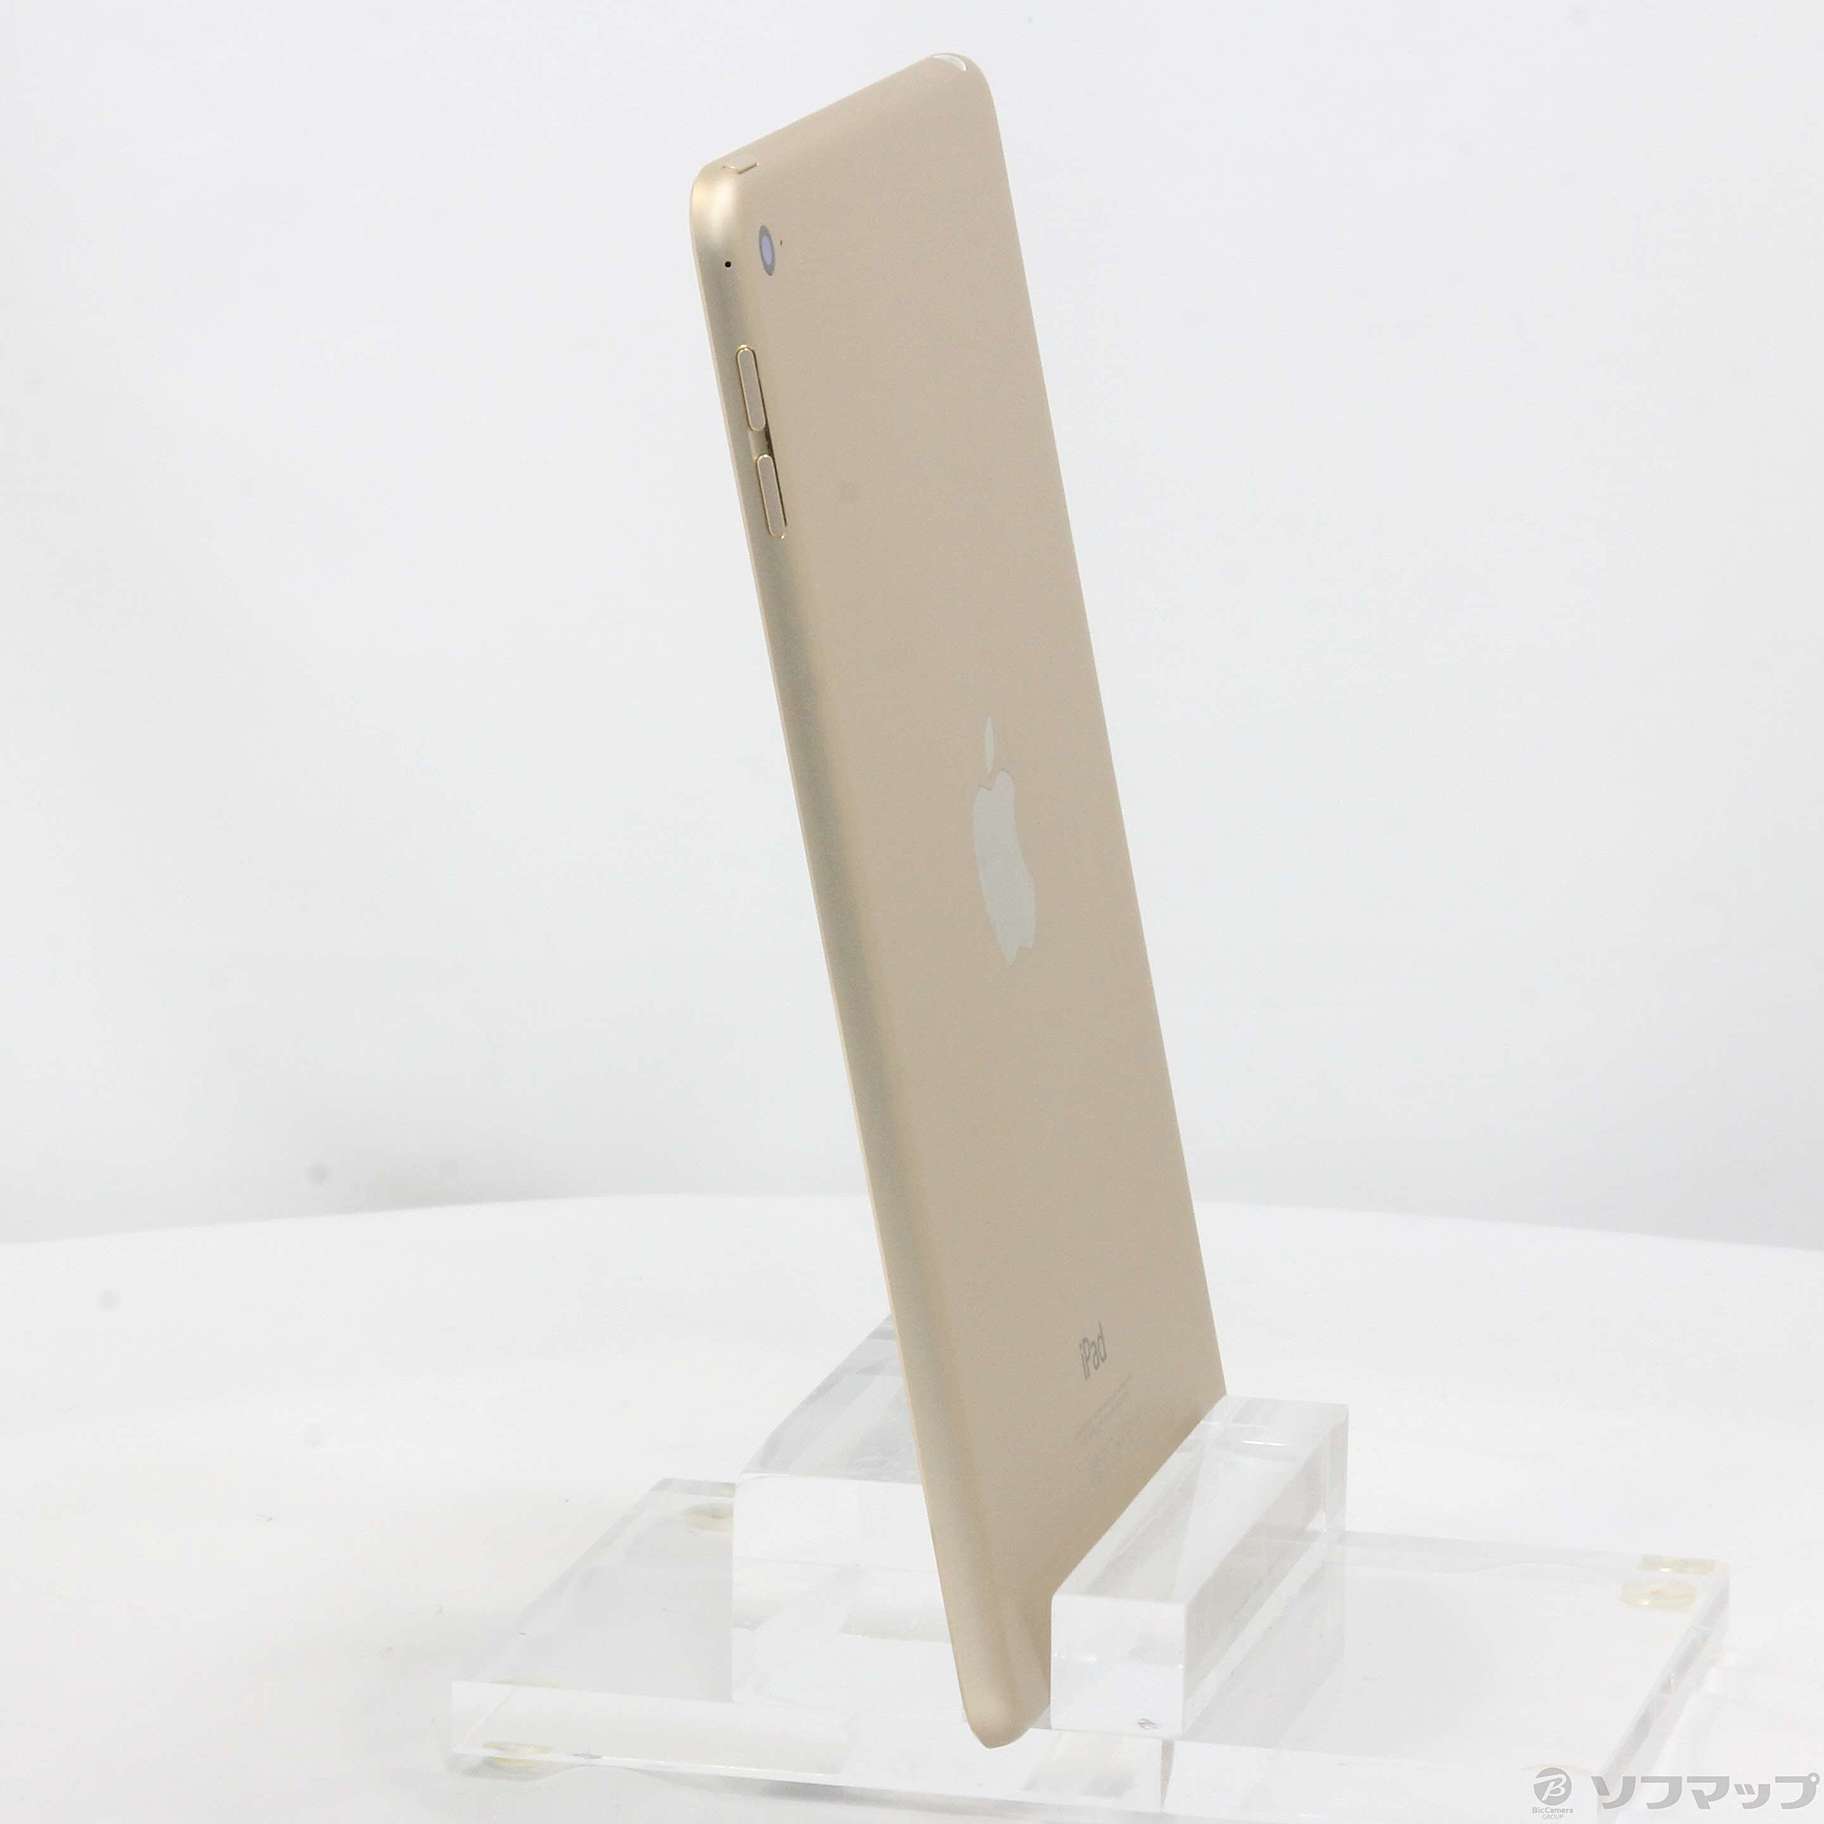 iPad mini 7.9_4 WiFi128G ゴールド FK9Q タブレット